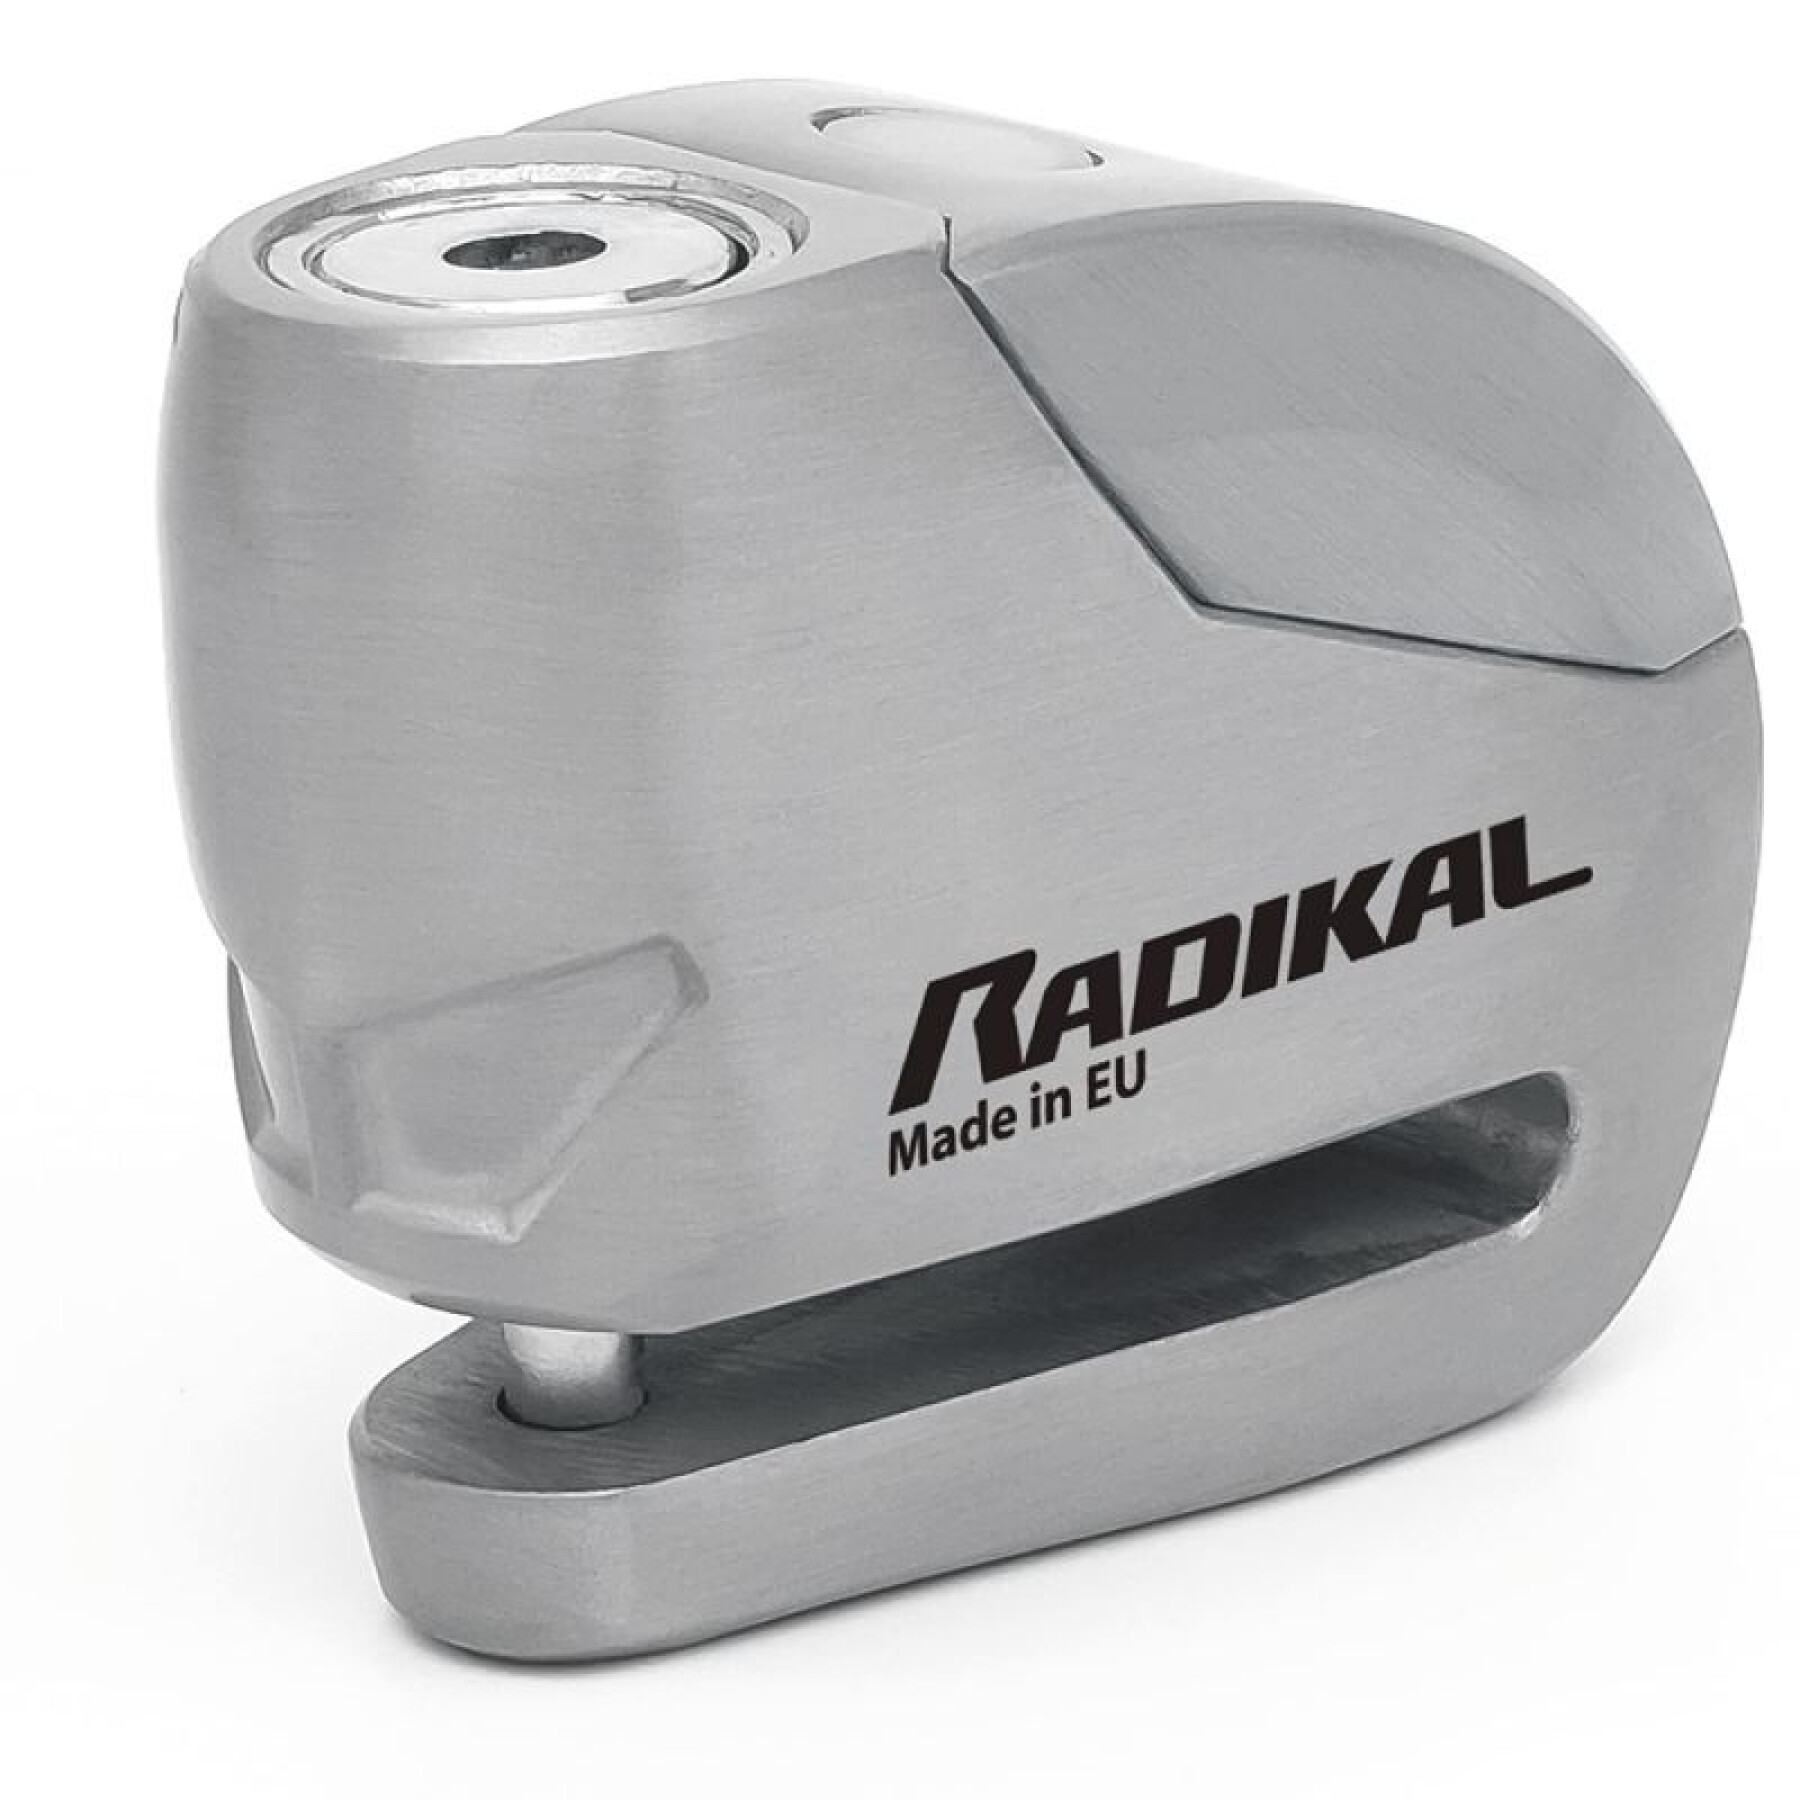 Bloque-disque moto avec alarme sonore et avec goupille Radikal